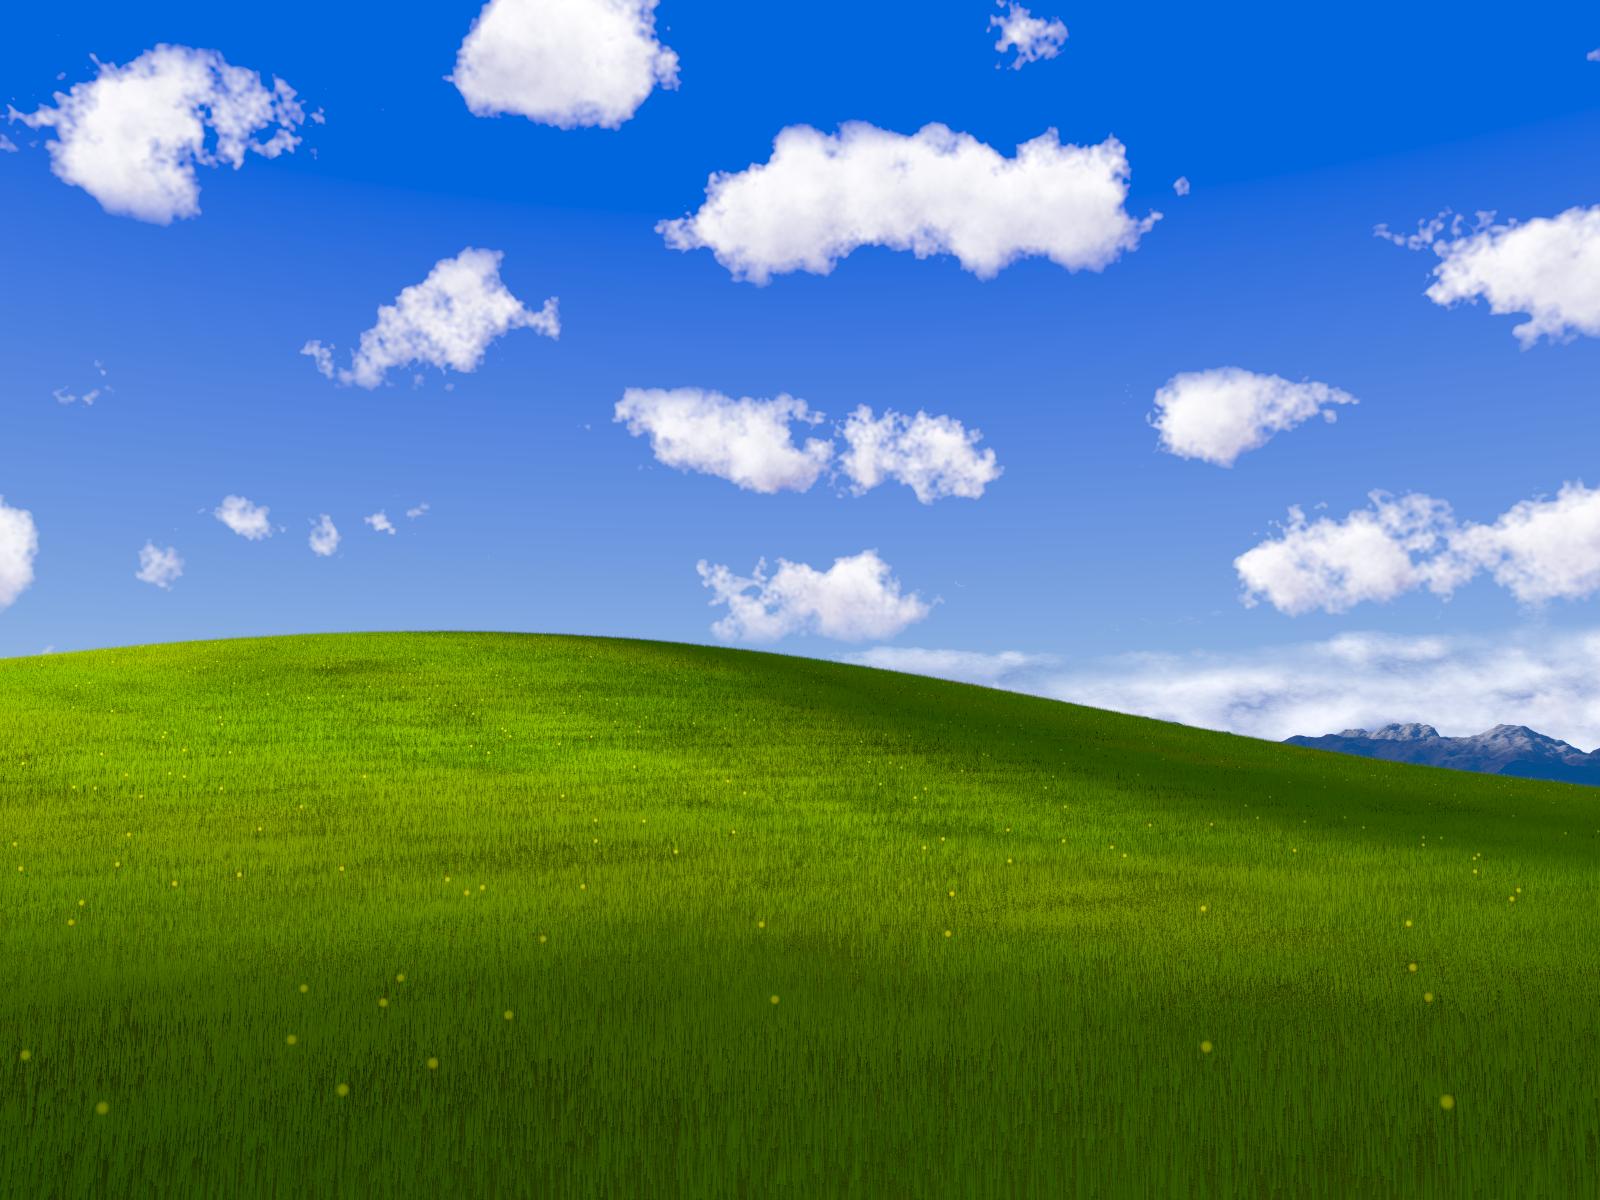 Windows XP Bliss Wallpaper là một trong những bức ảnh nền nổi tiếng và được yêu thích nhất trong lịch sử. Với khung cảnh xanh tươi mát, bạn sẽ cảm thấy thư giãn và tươi mới khi ngắm nhìn bức hình nền này. Hãy xem ảnh liên quan để đắm chìm trong thiên nhiên tuyệt đẹp của nó.